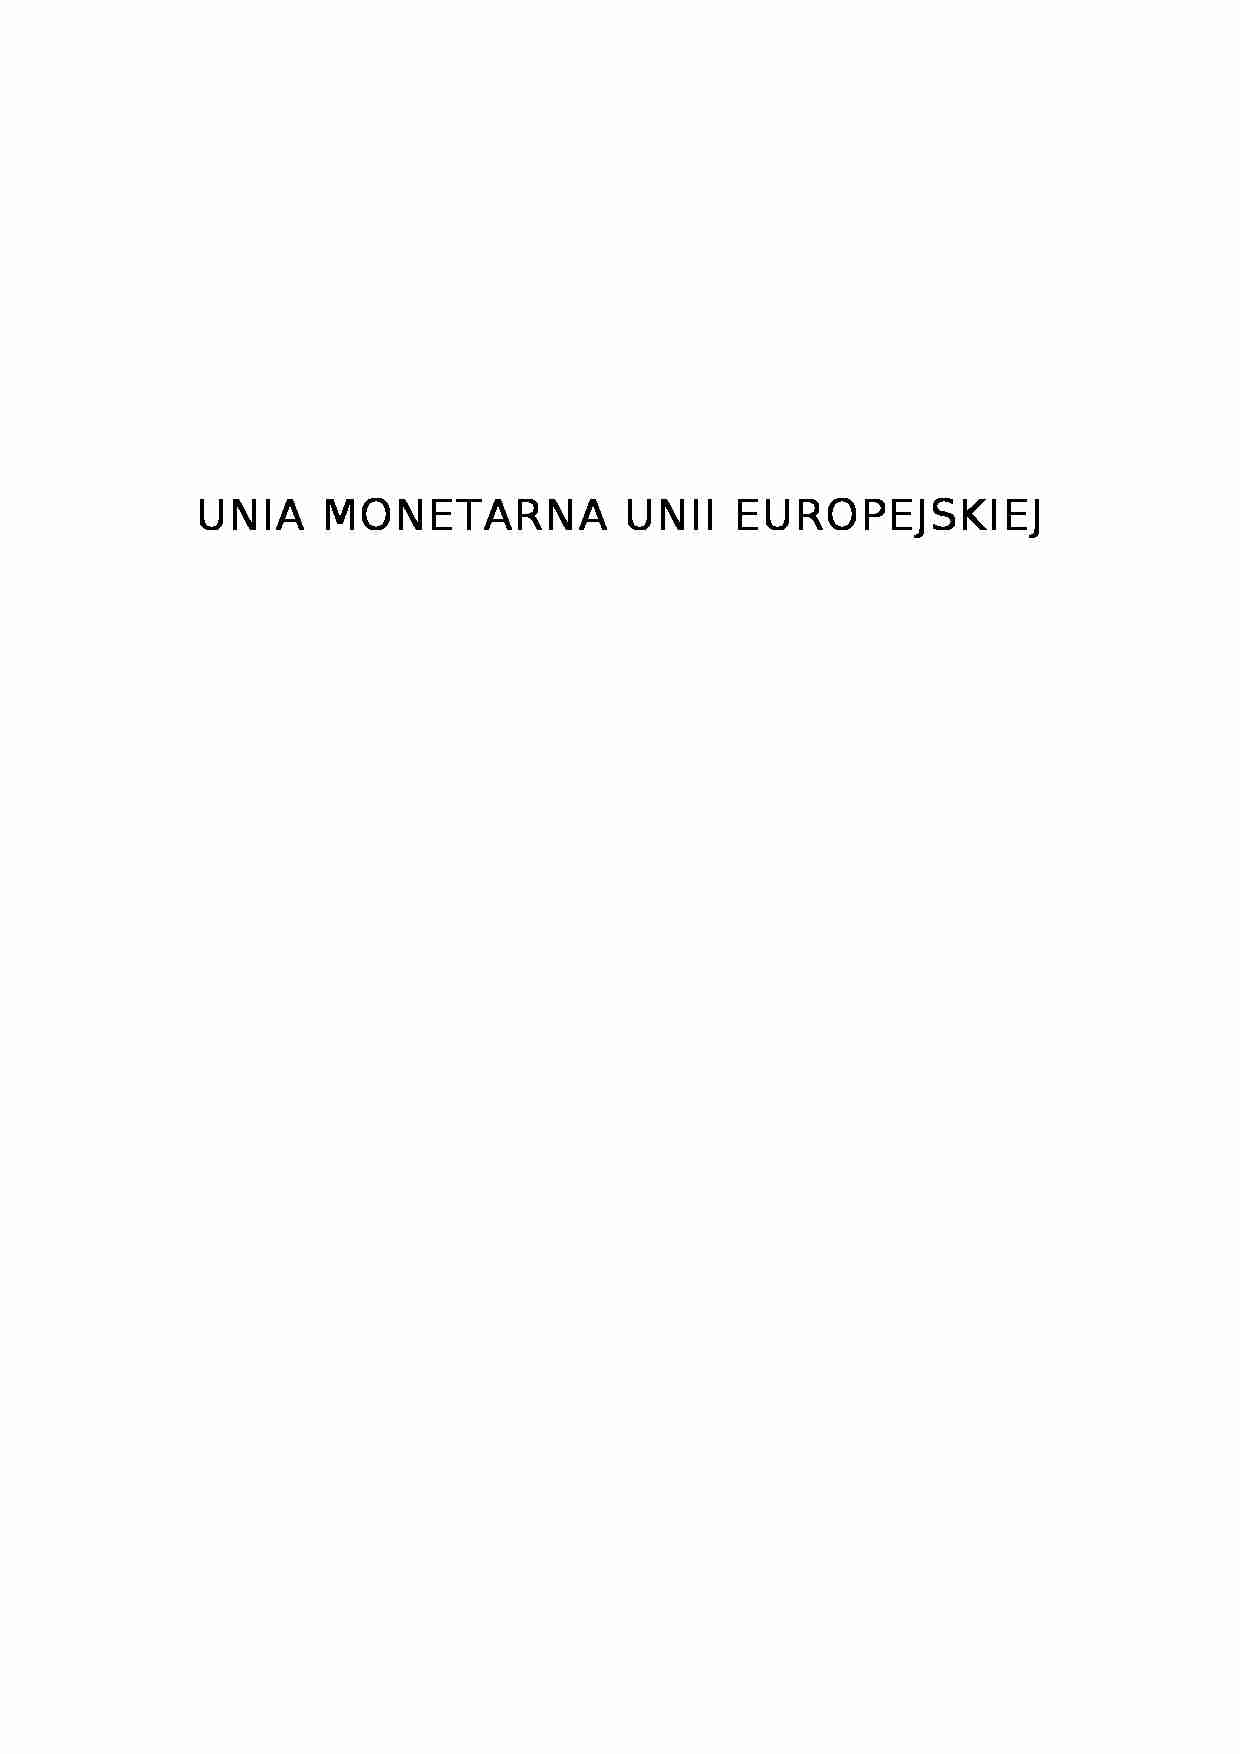 Unia monetarna  - strona 1